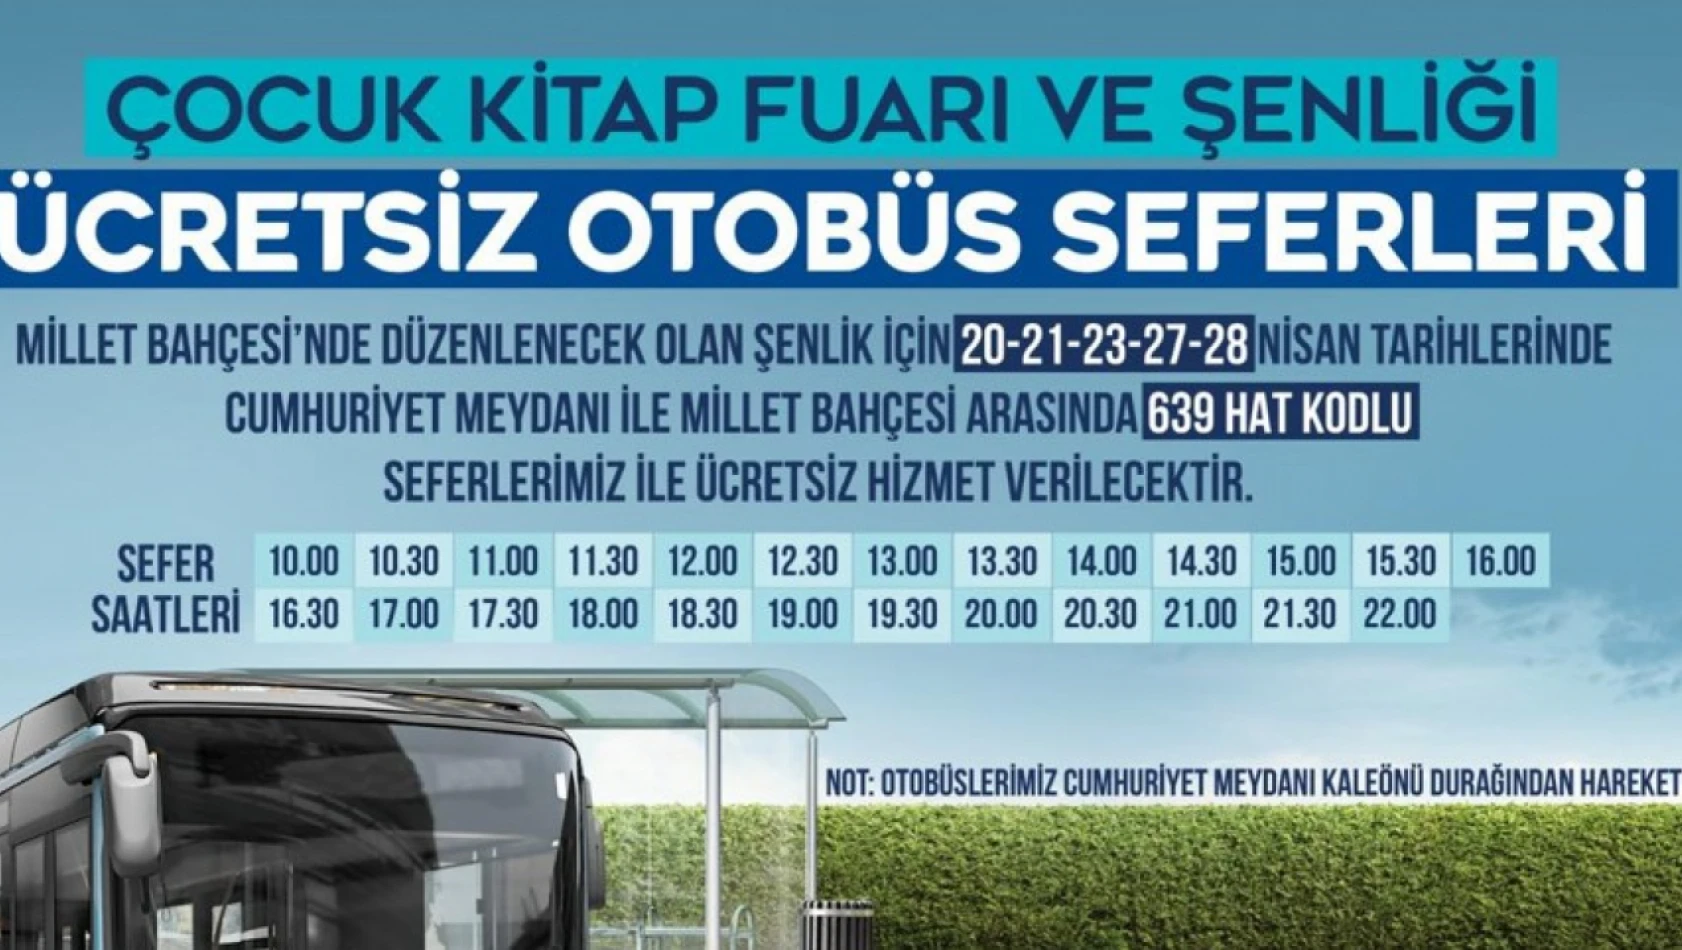 Kayseri Büyükşehir Belediyesi ücretsiz otobüs seferleri düzenleyecek